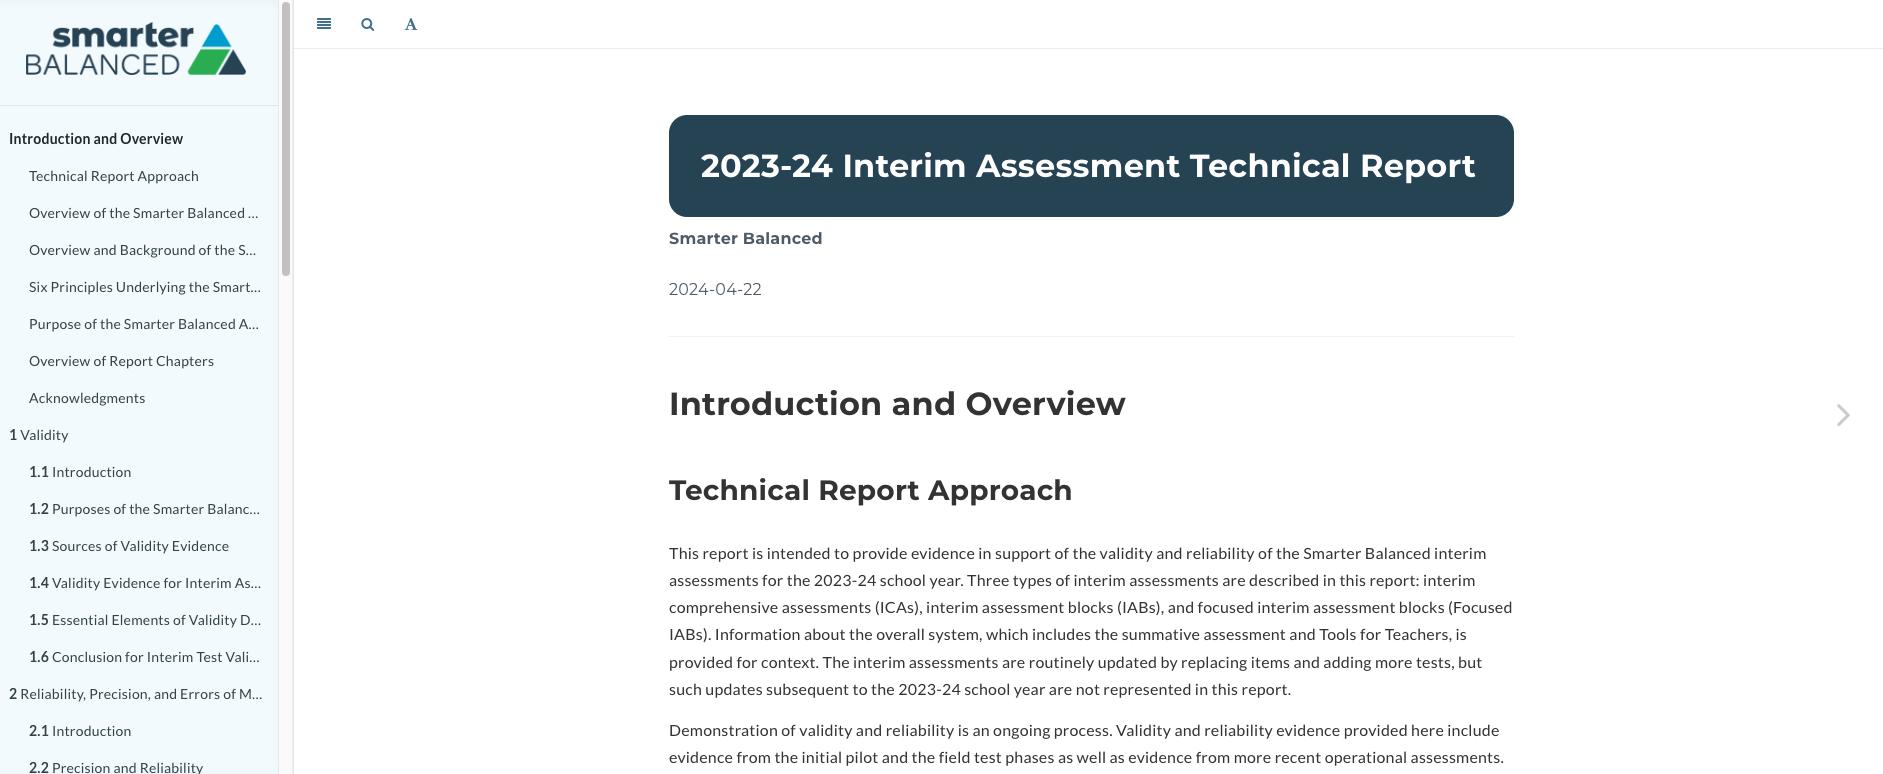 2023-24 Interim Technical Report Picture